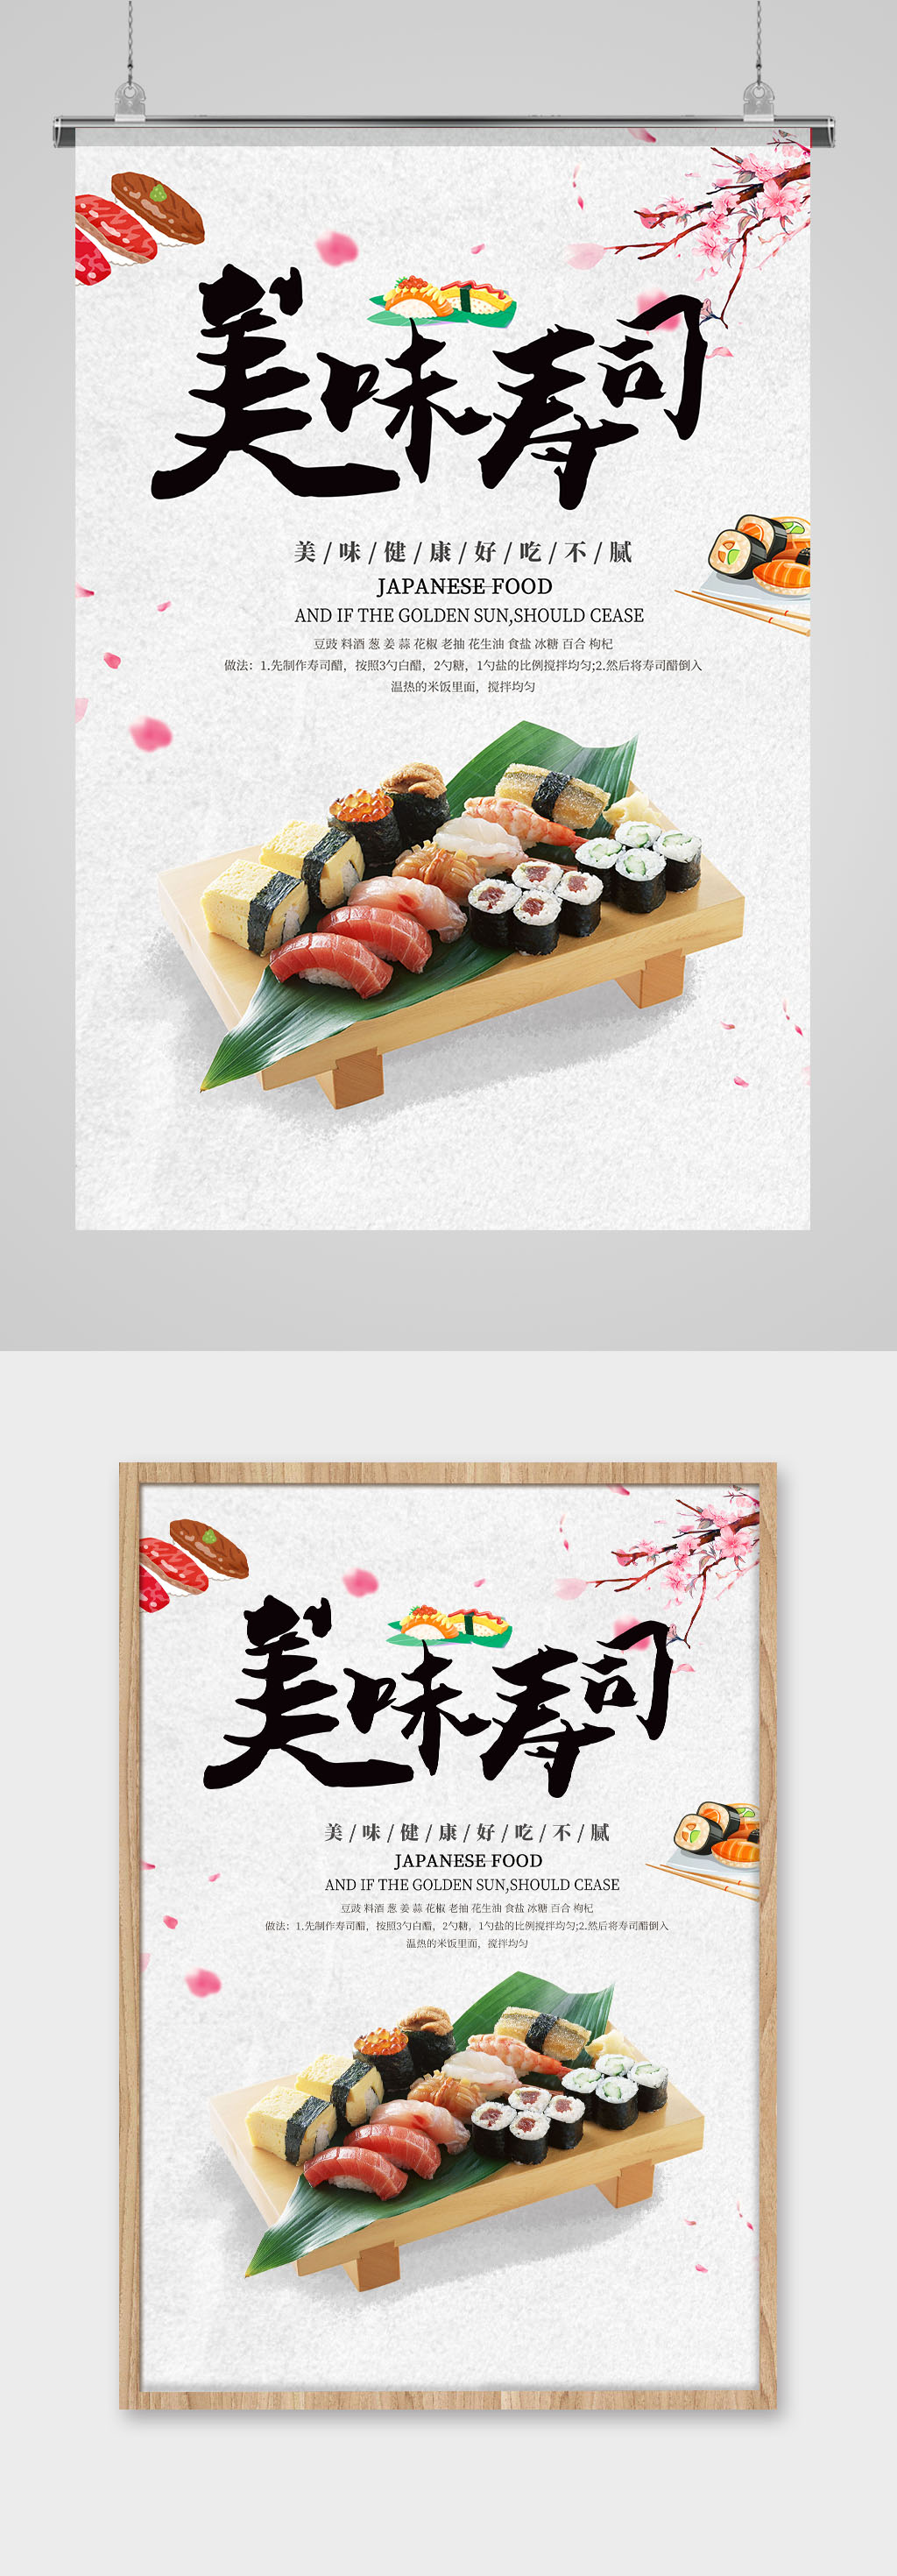 寿司海报展板素材免费下载,本作品是由霞妹儿上传的原创平面广告